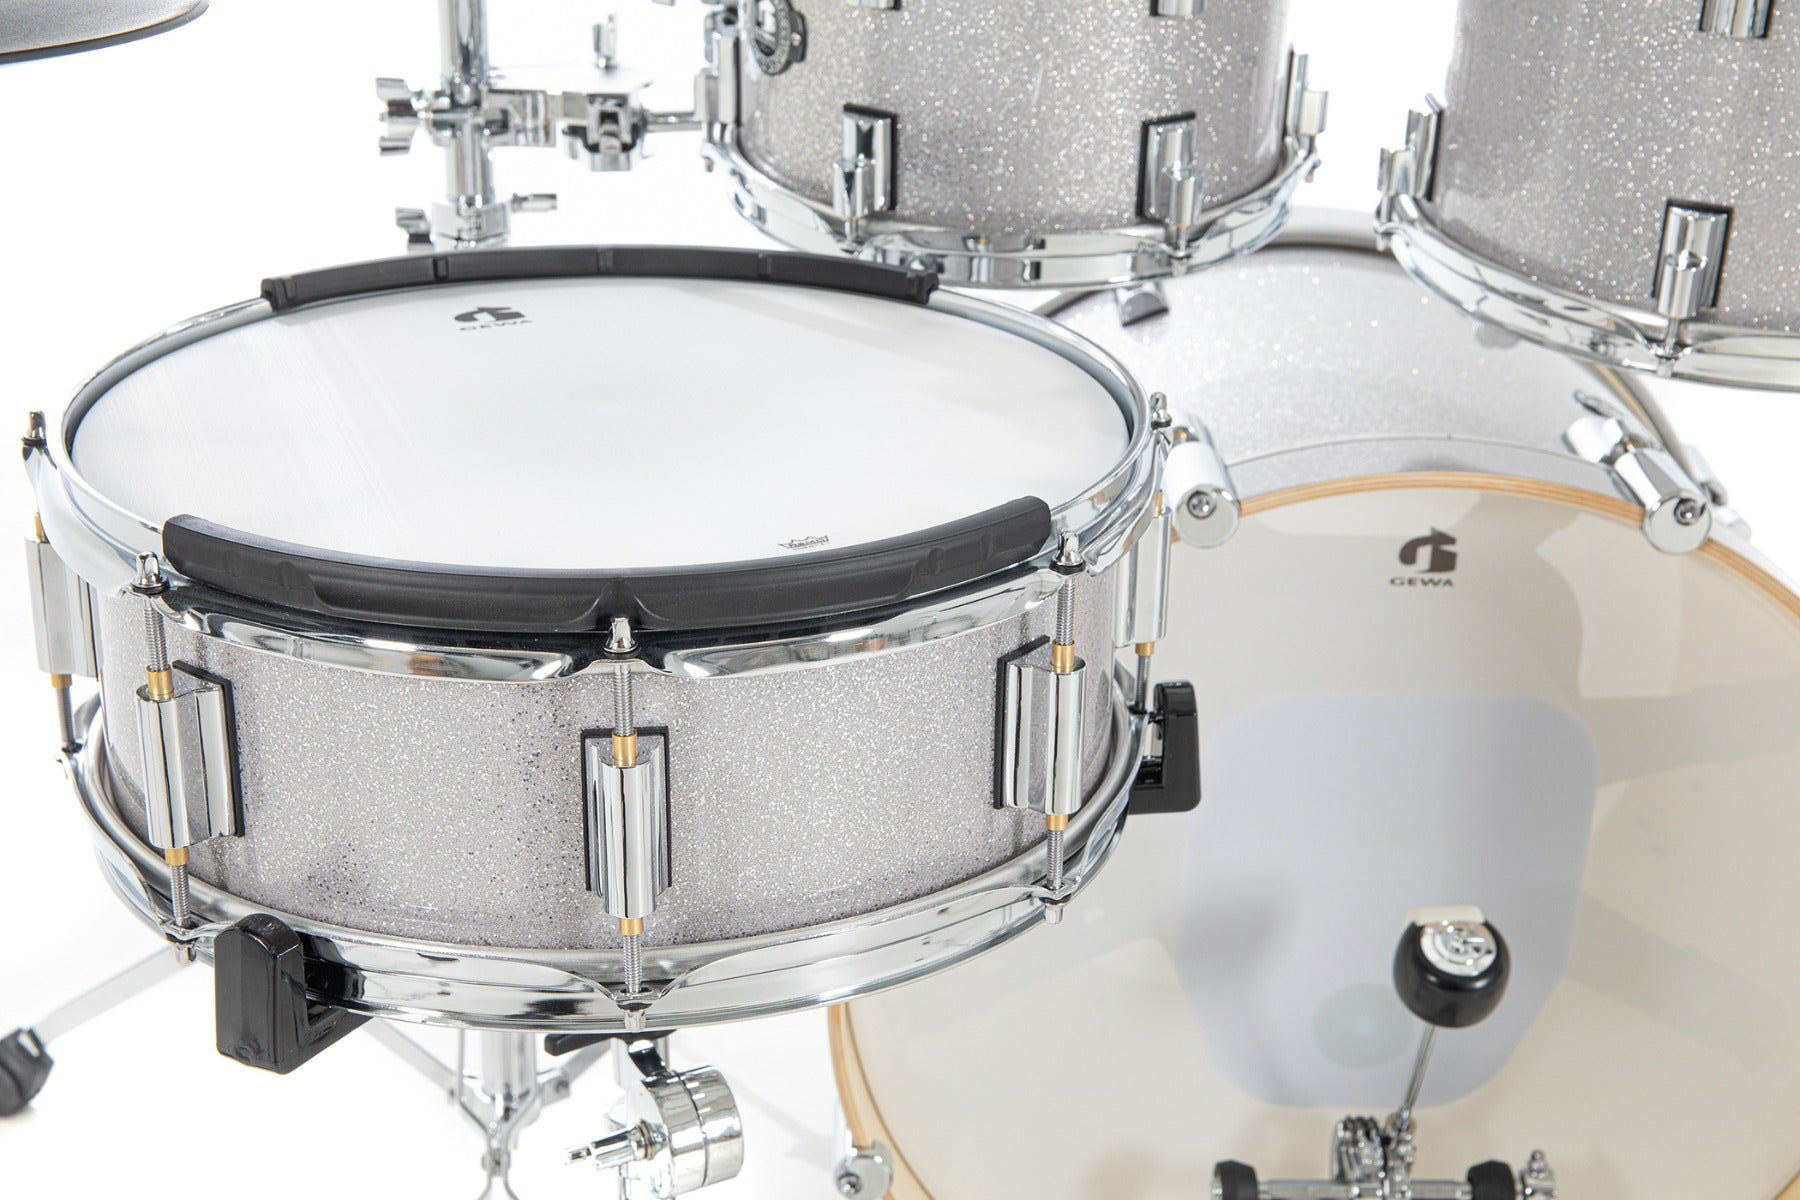 GEWA G9 Pro 5 SE Electronic Drum Set - Silver Sparkle, View 7